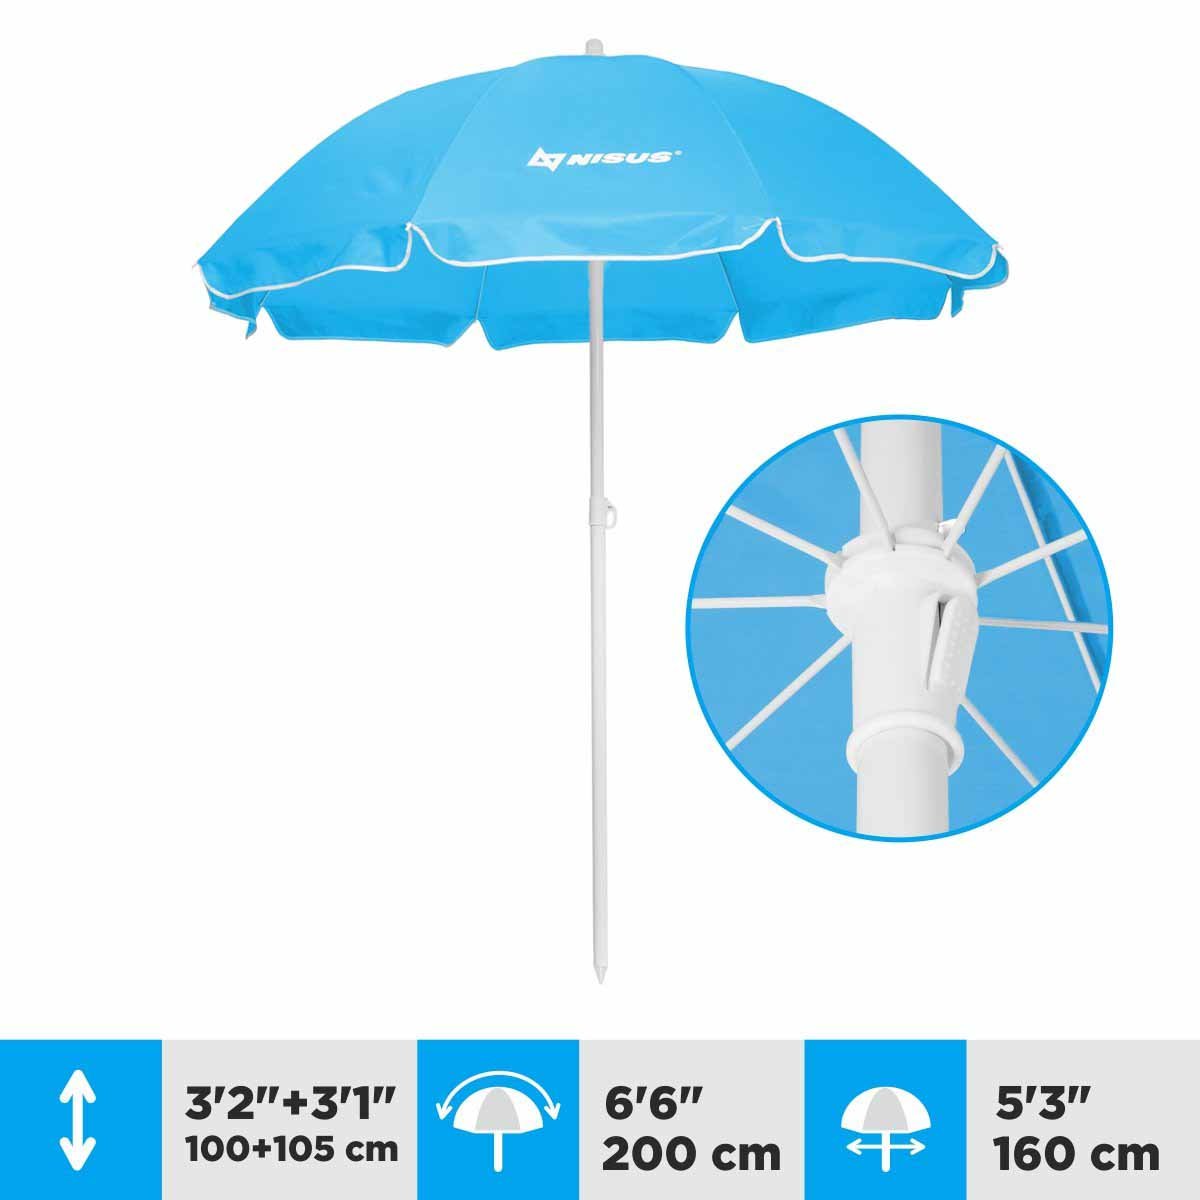 A 5.3 ft Blue Folding Beach Umbrella is 6.3 feet high